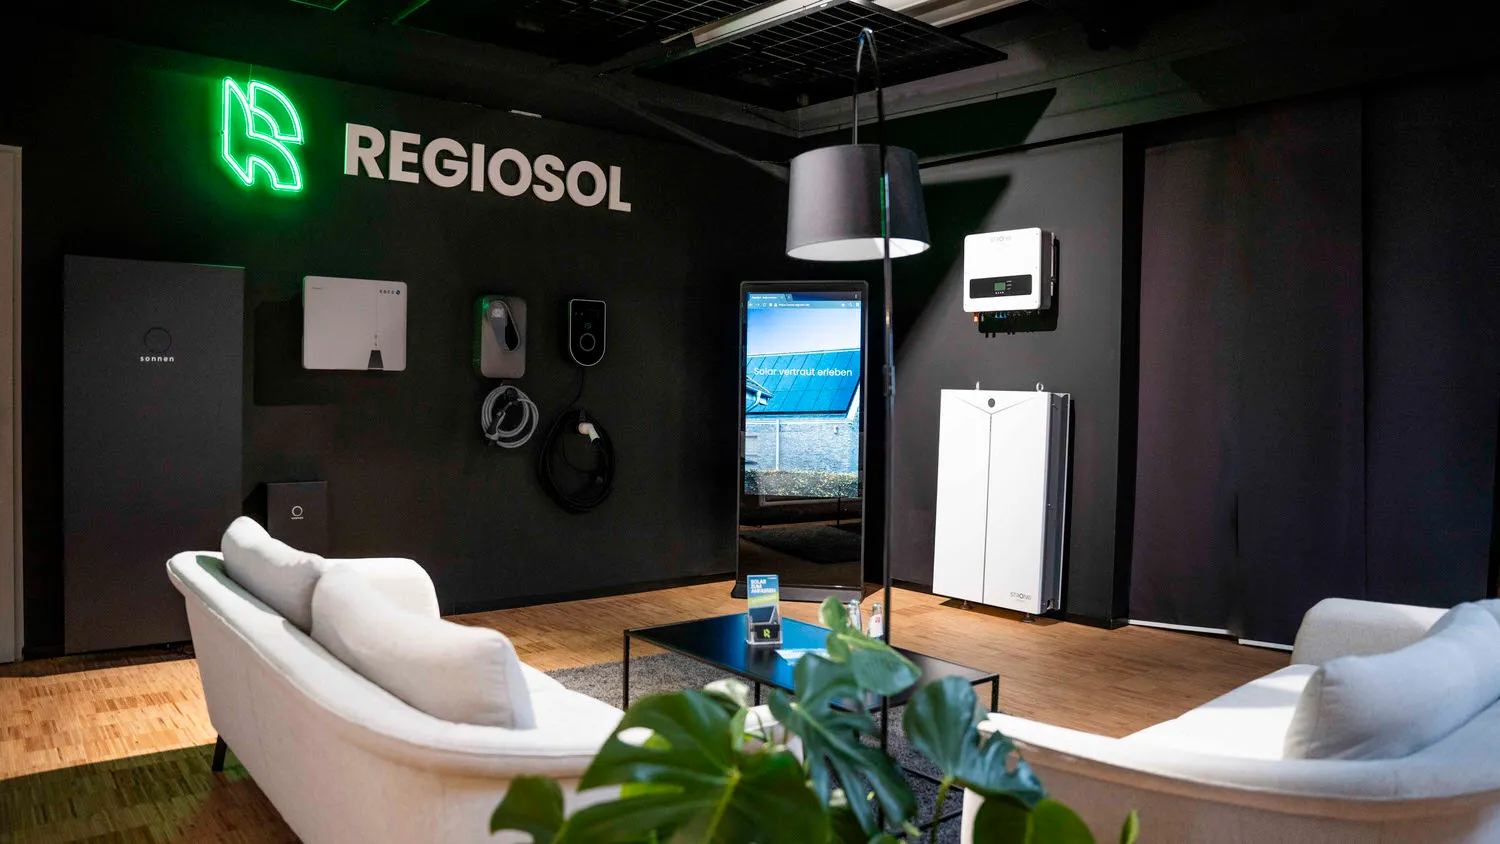 RegioSol Showroom mit Photovoltaik-Technik, inklusive PV-Module, Batteriespeicher und Wallbox